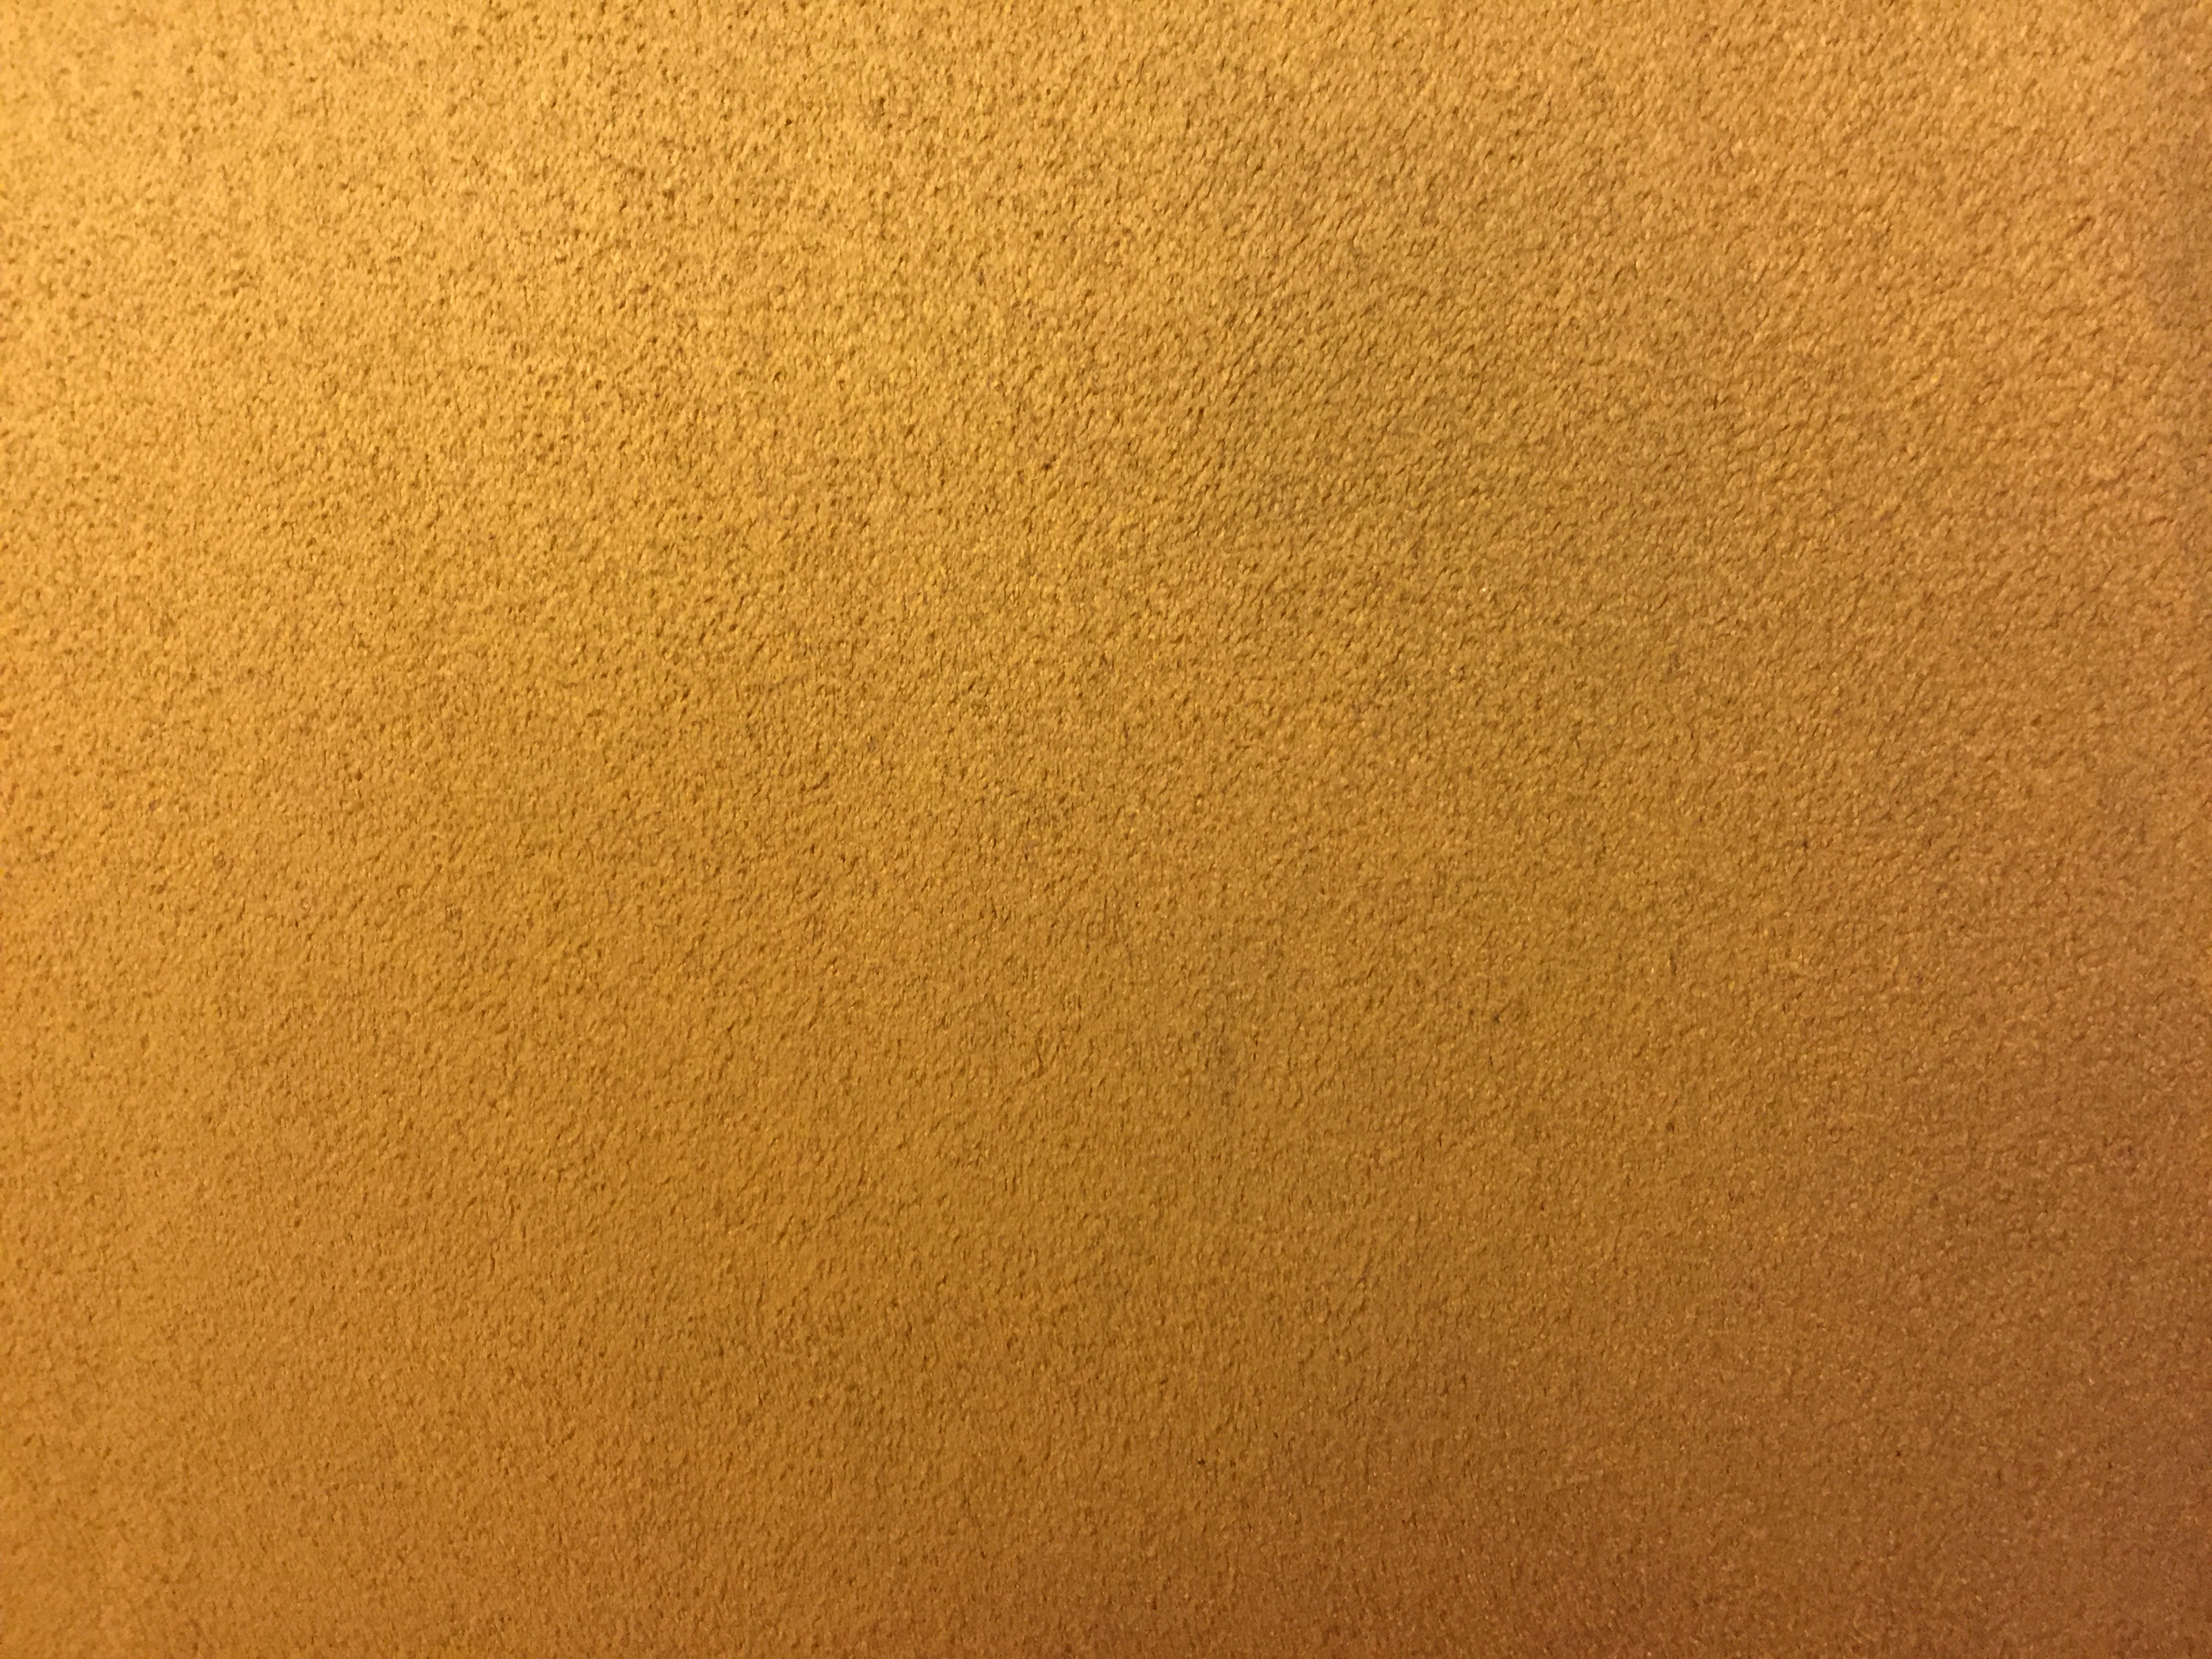 Close up of golden felt material texture